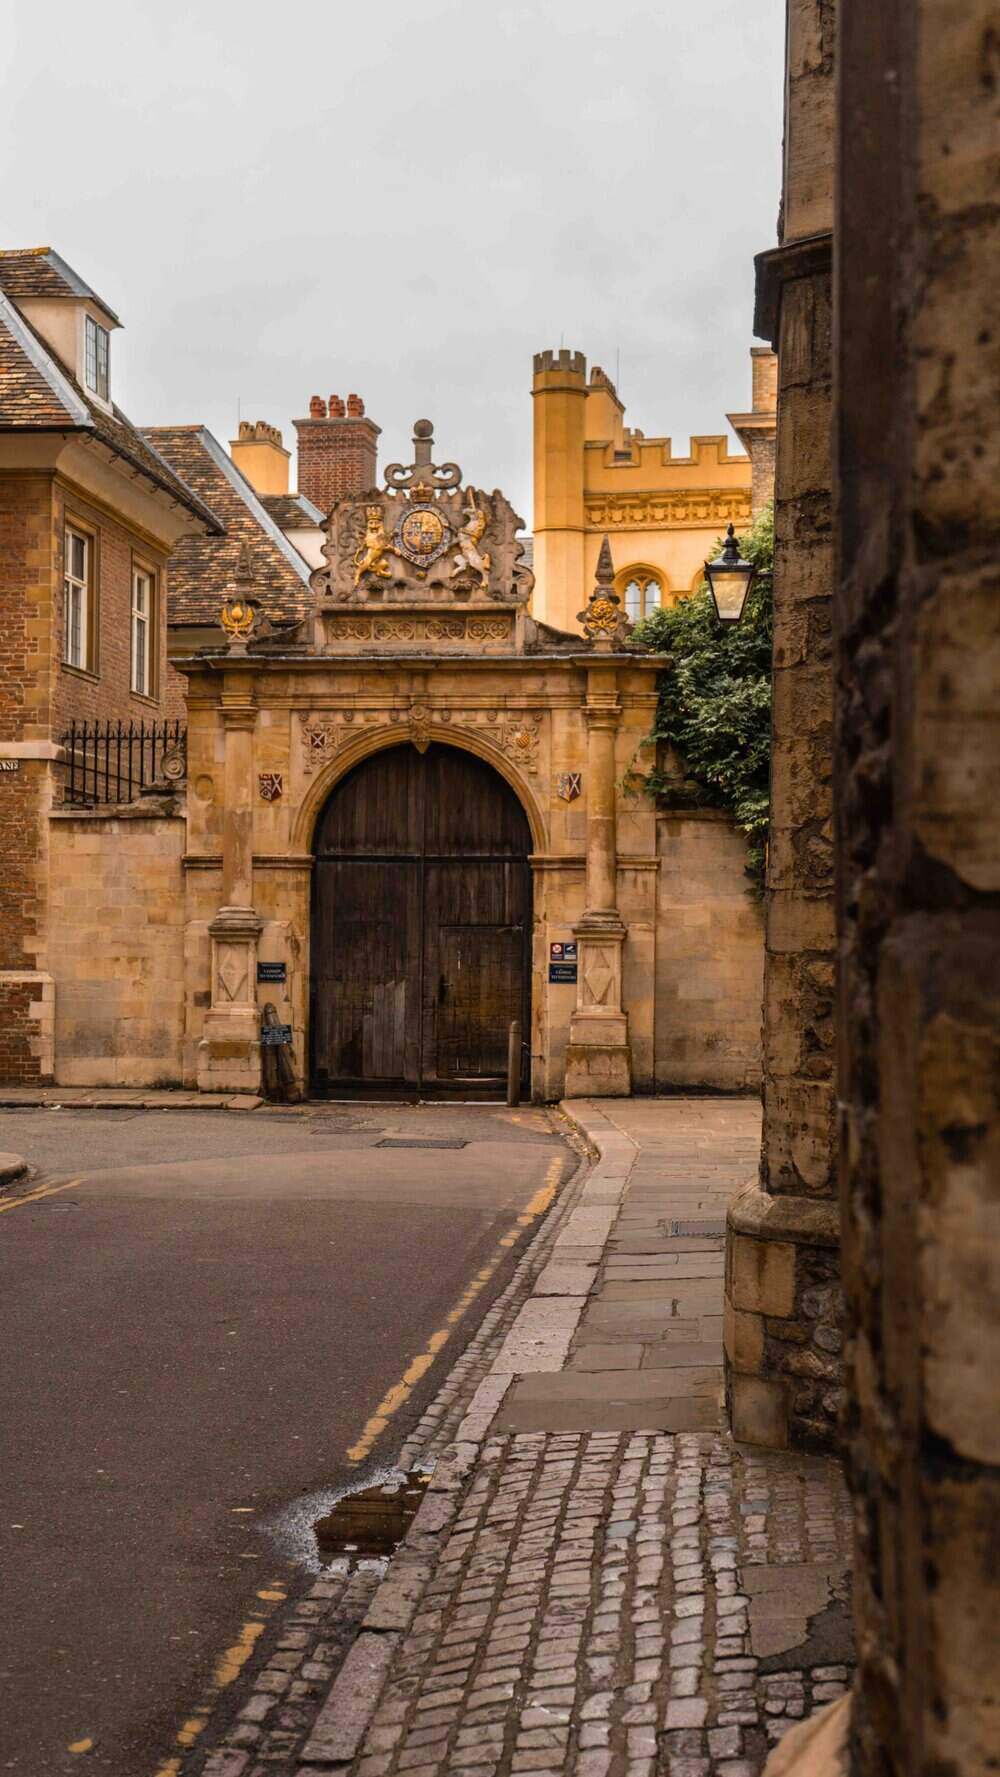 Cambridge Street